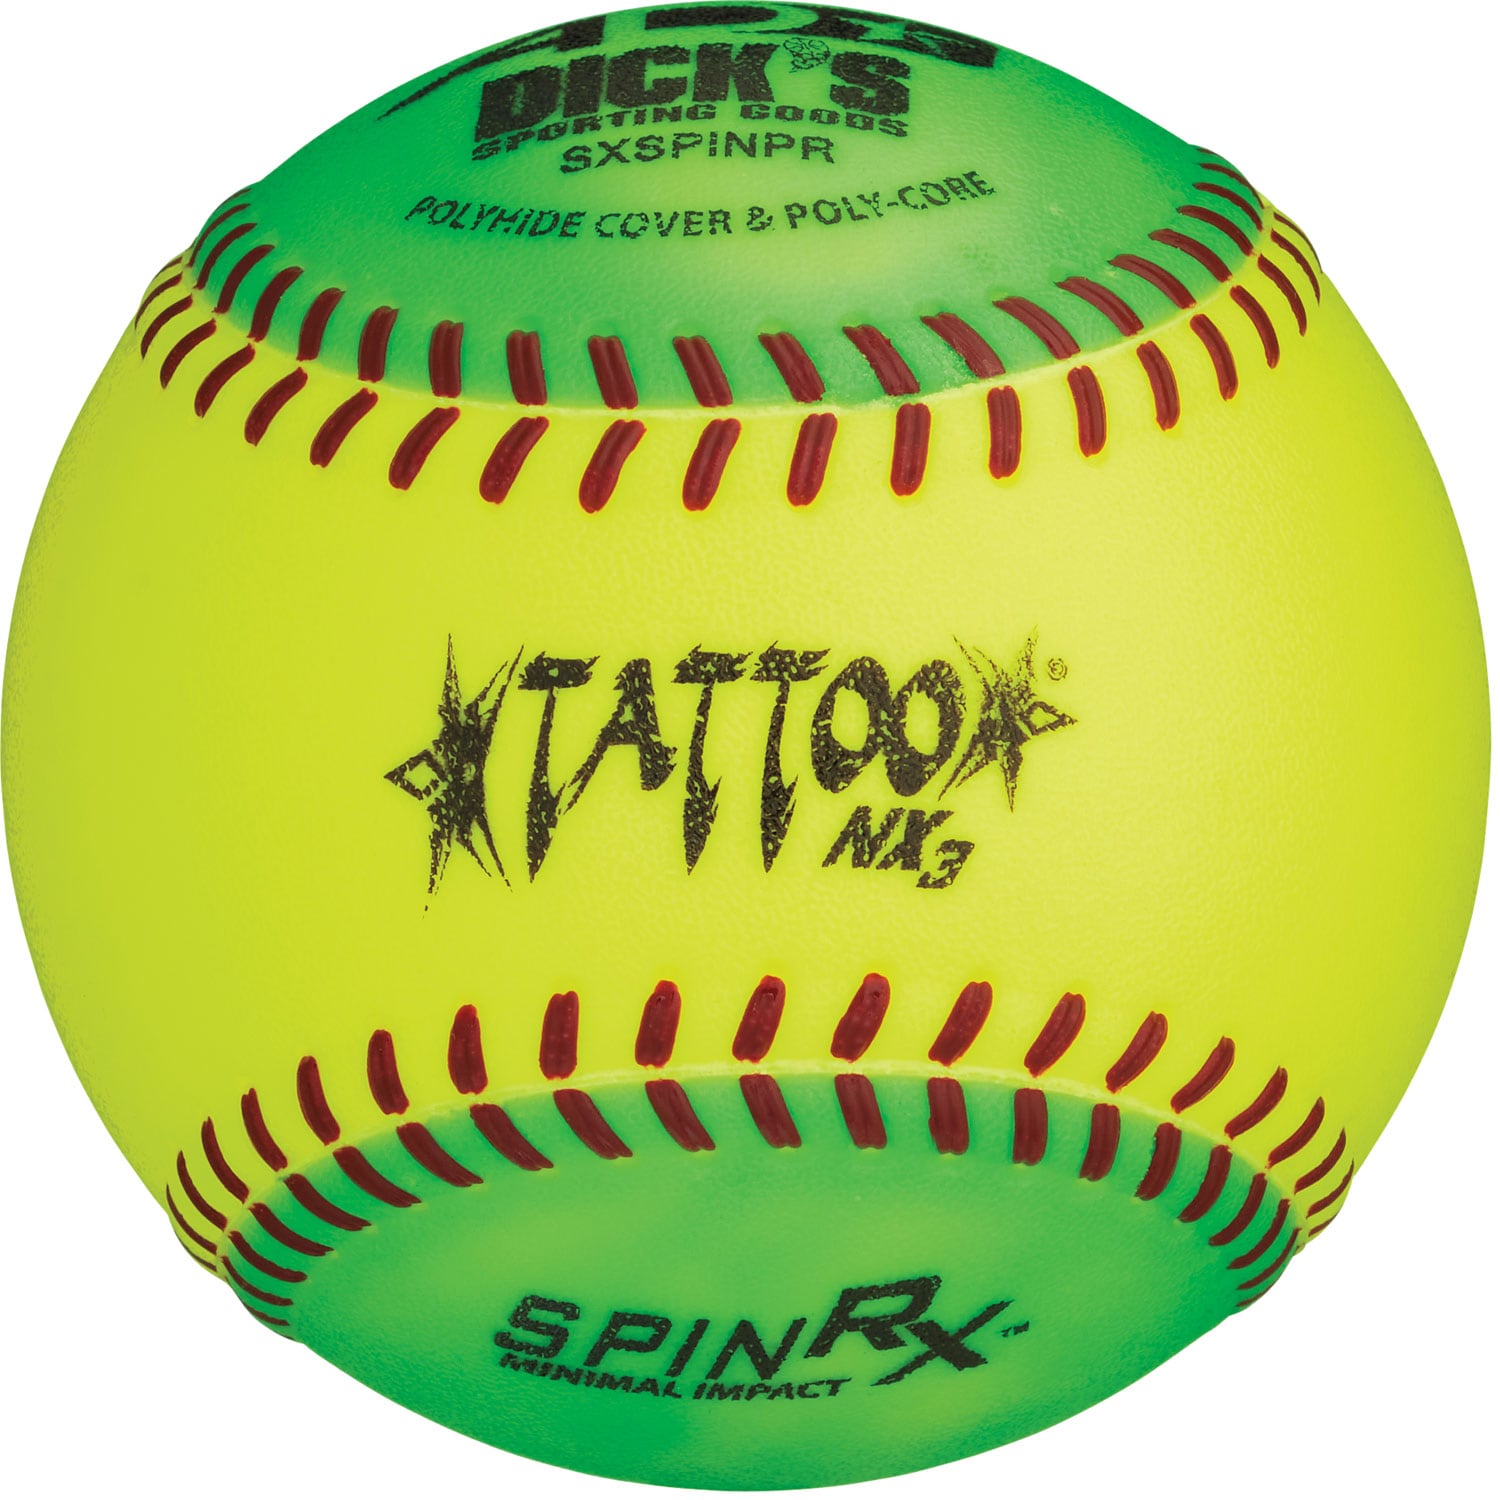 610 рез. по запросу «Softball tattoo» — изображения, стоковые фотографии,  трехмерные объекты и векторная графика | Shutterstock